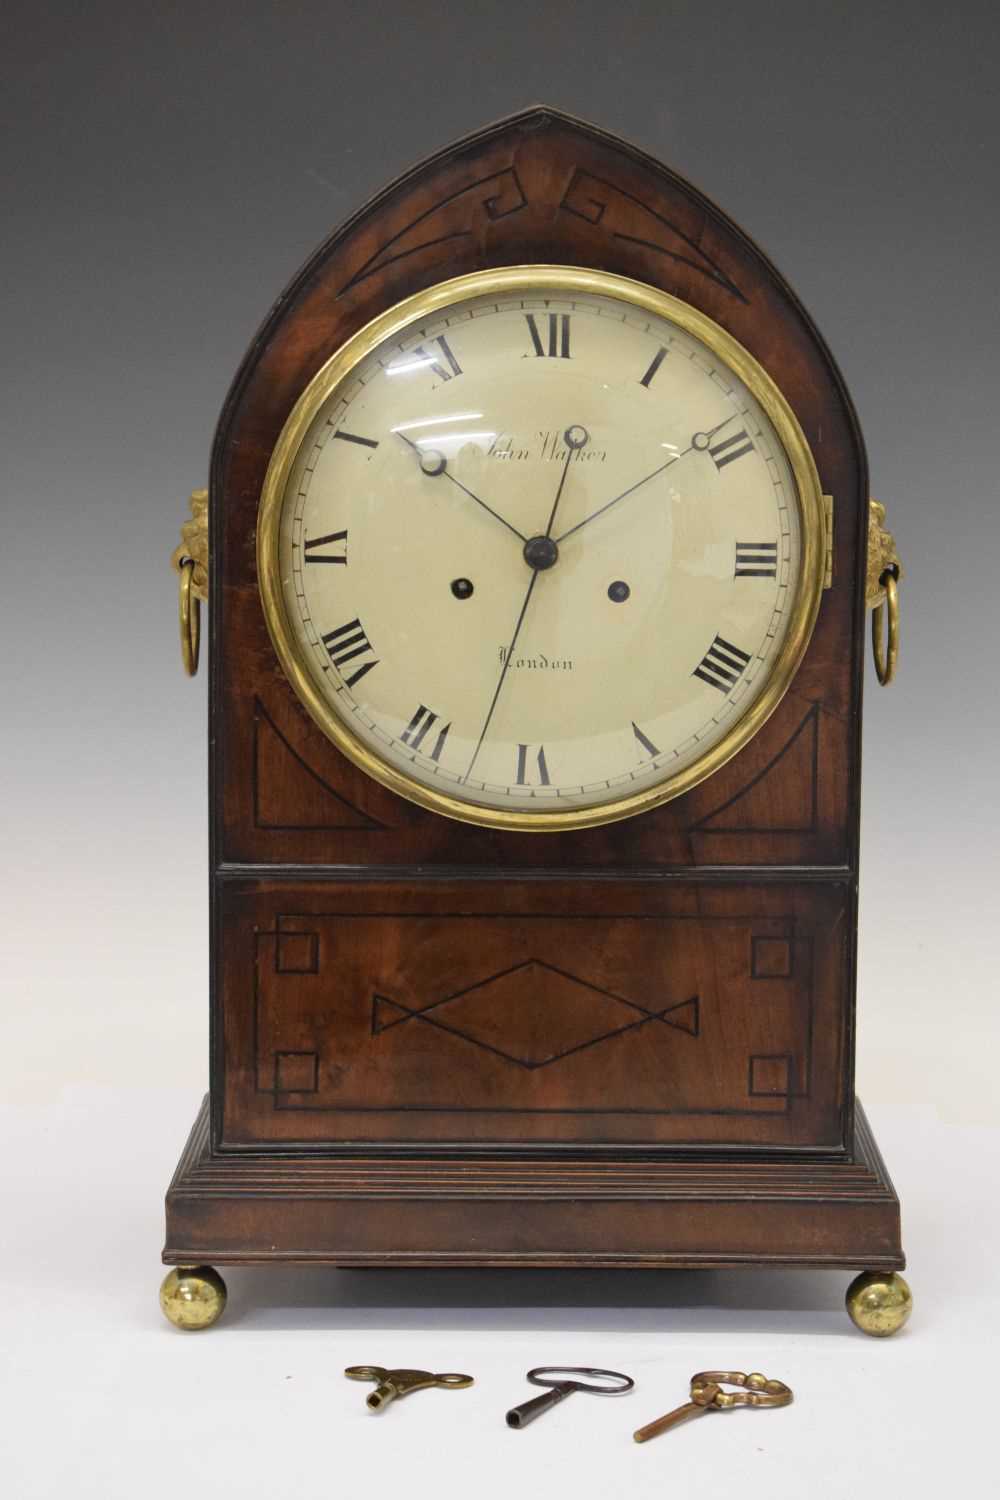 Bracket clock, John Walker, London - Image 7 of 7